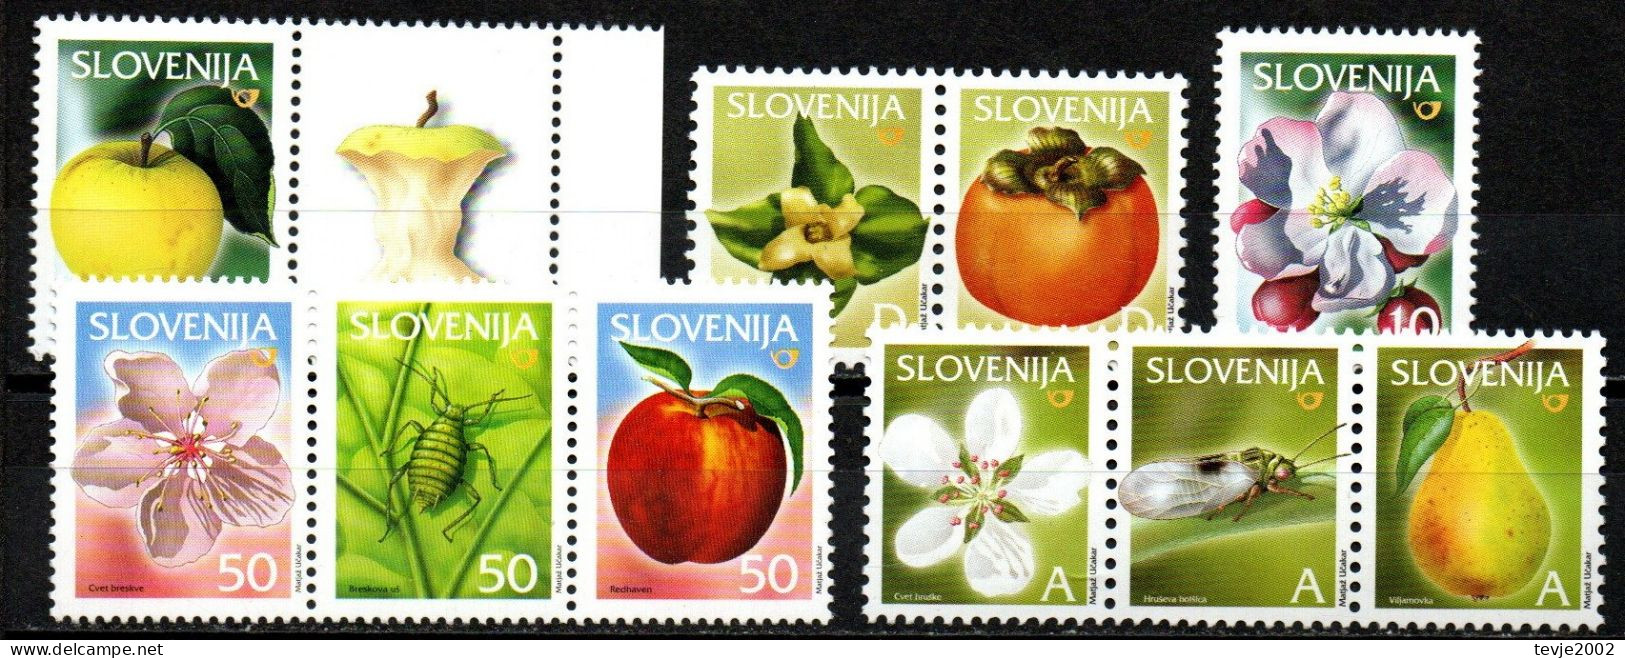 Slowenien Slovenija - Lot Freimarken Aus 2000 - 2006 - Postfrisch MNH - Früchte Obst Fruits - Vegetables